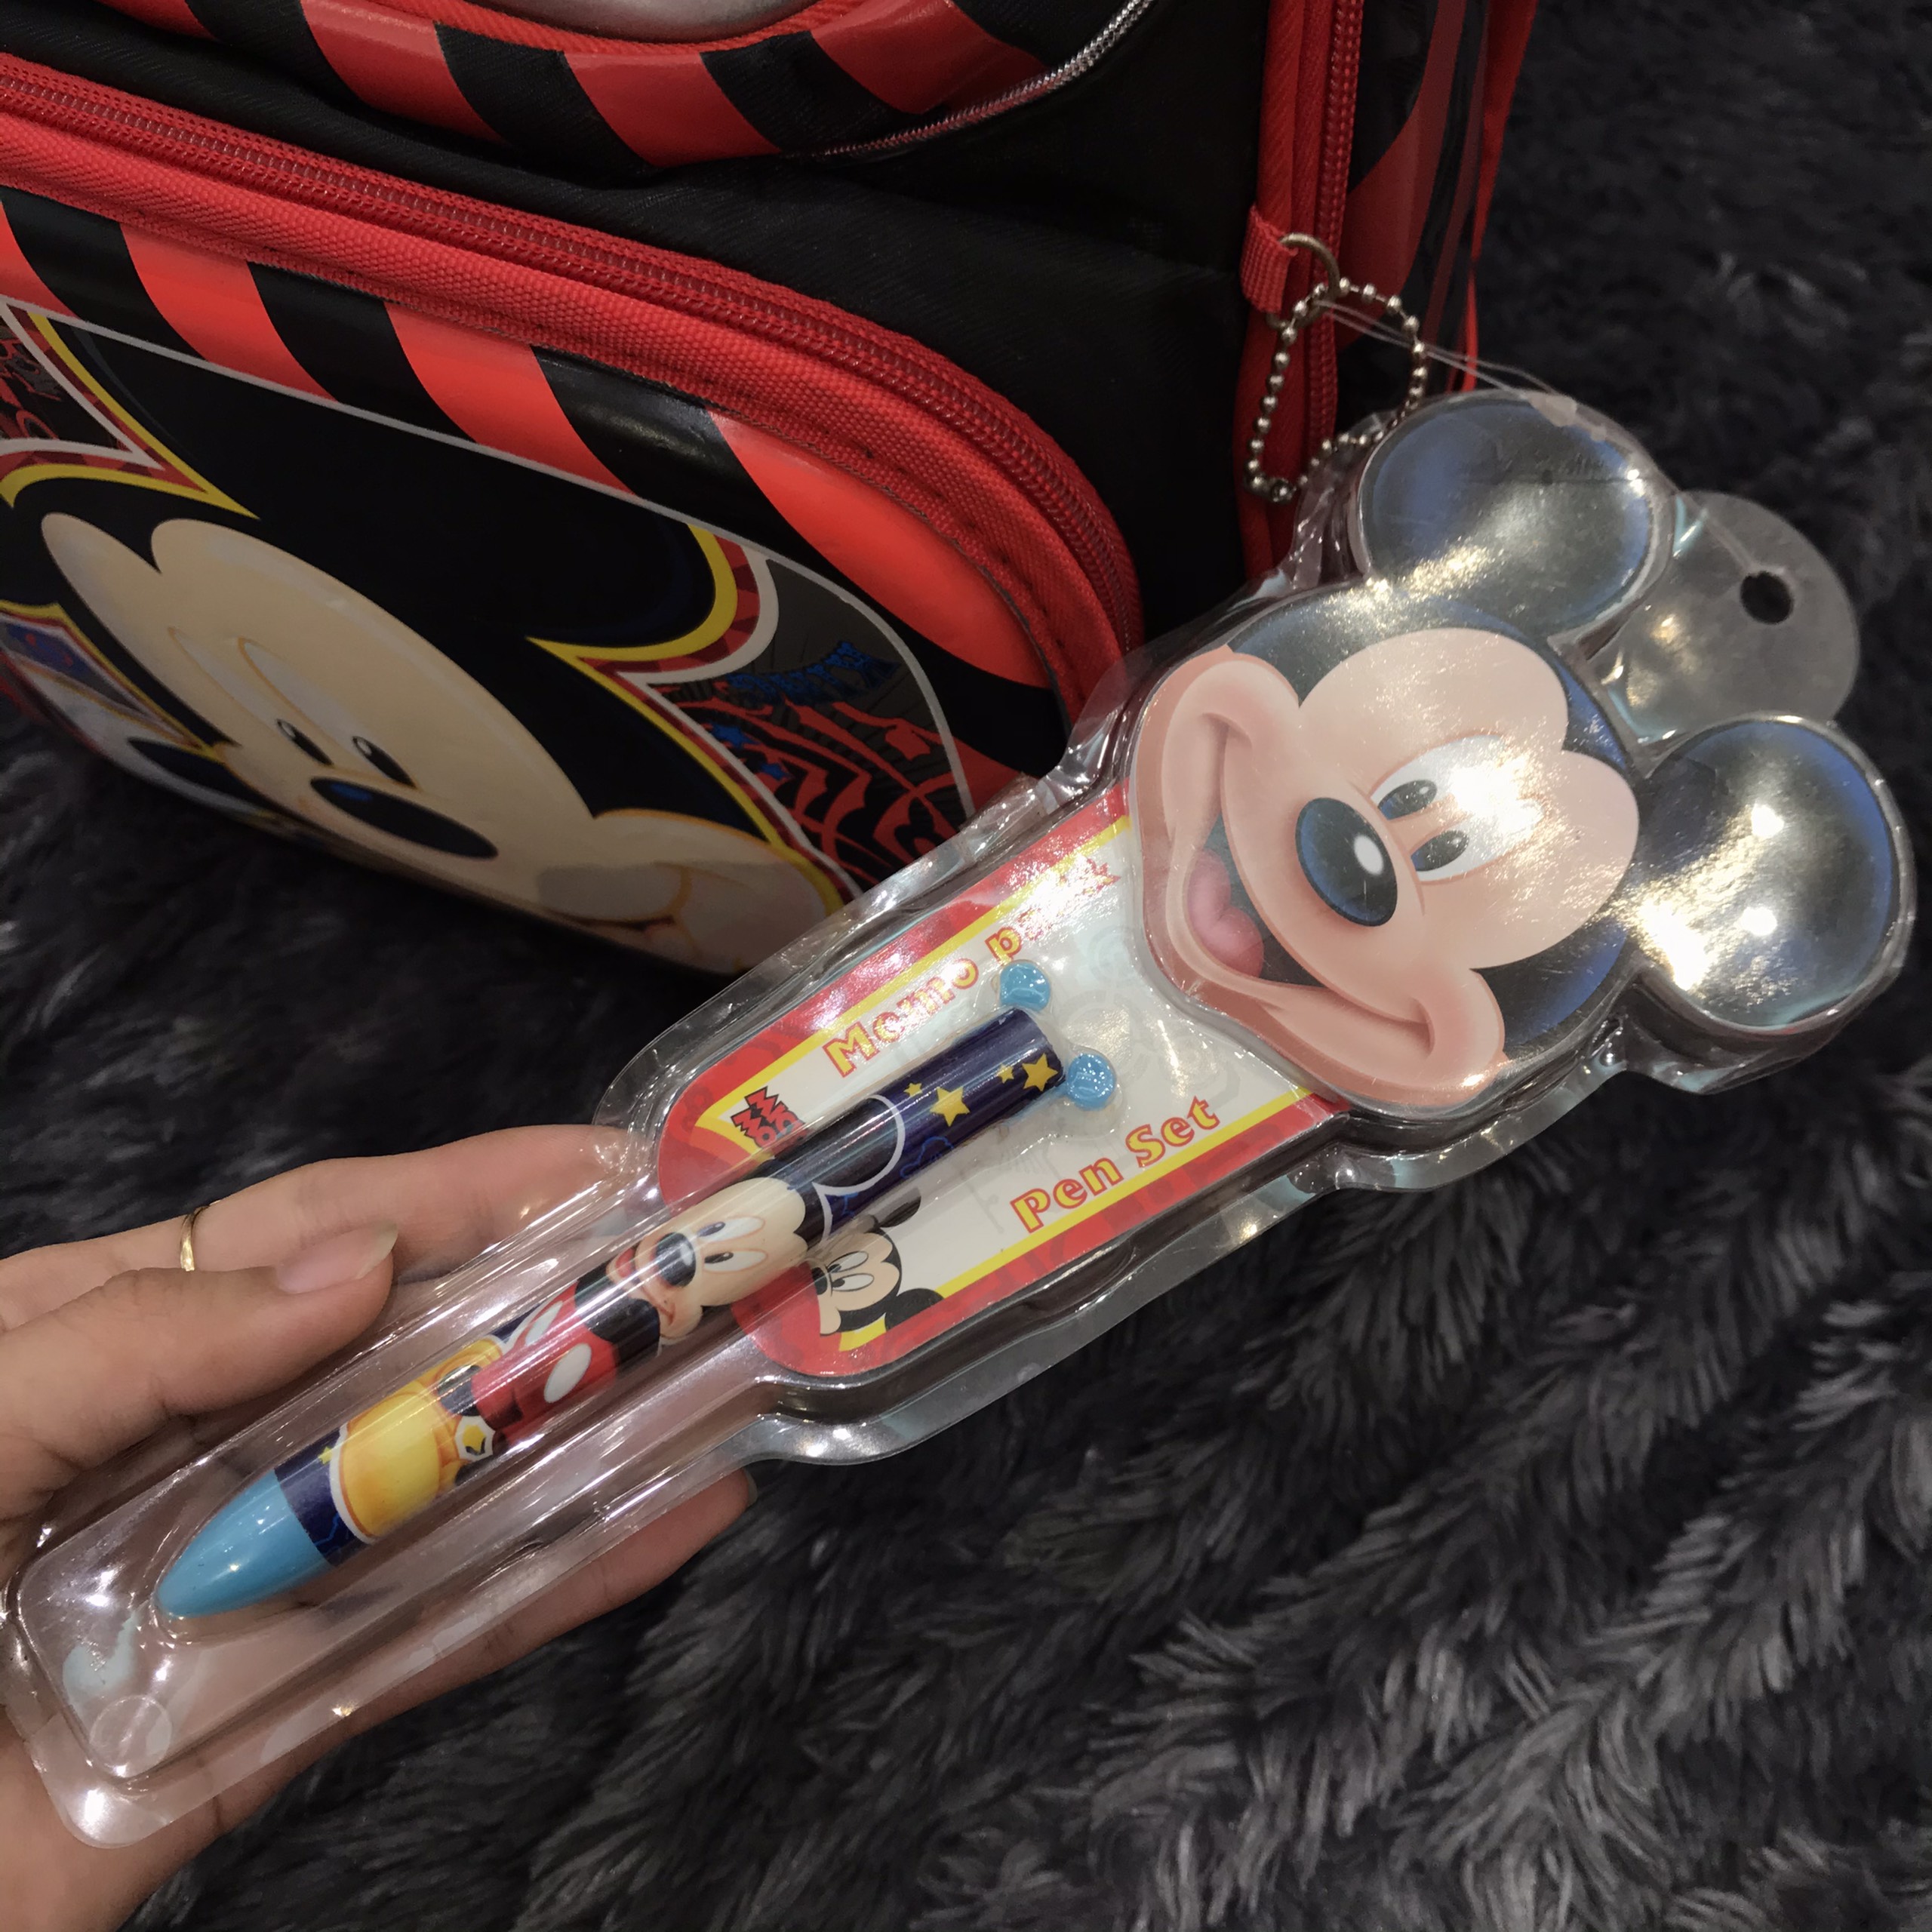 Balo chống gù lưng cao cấp 4 ngăn hình Mickey Mouse - BLCGLM